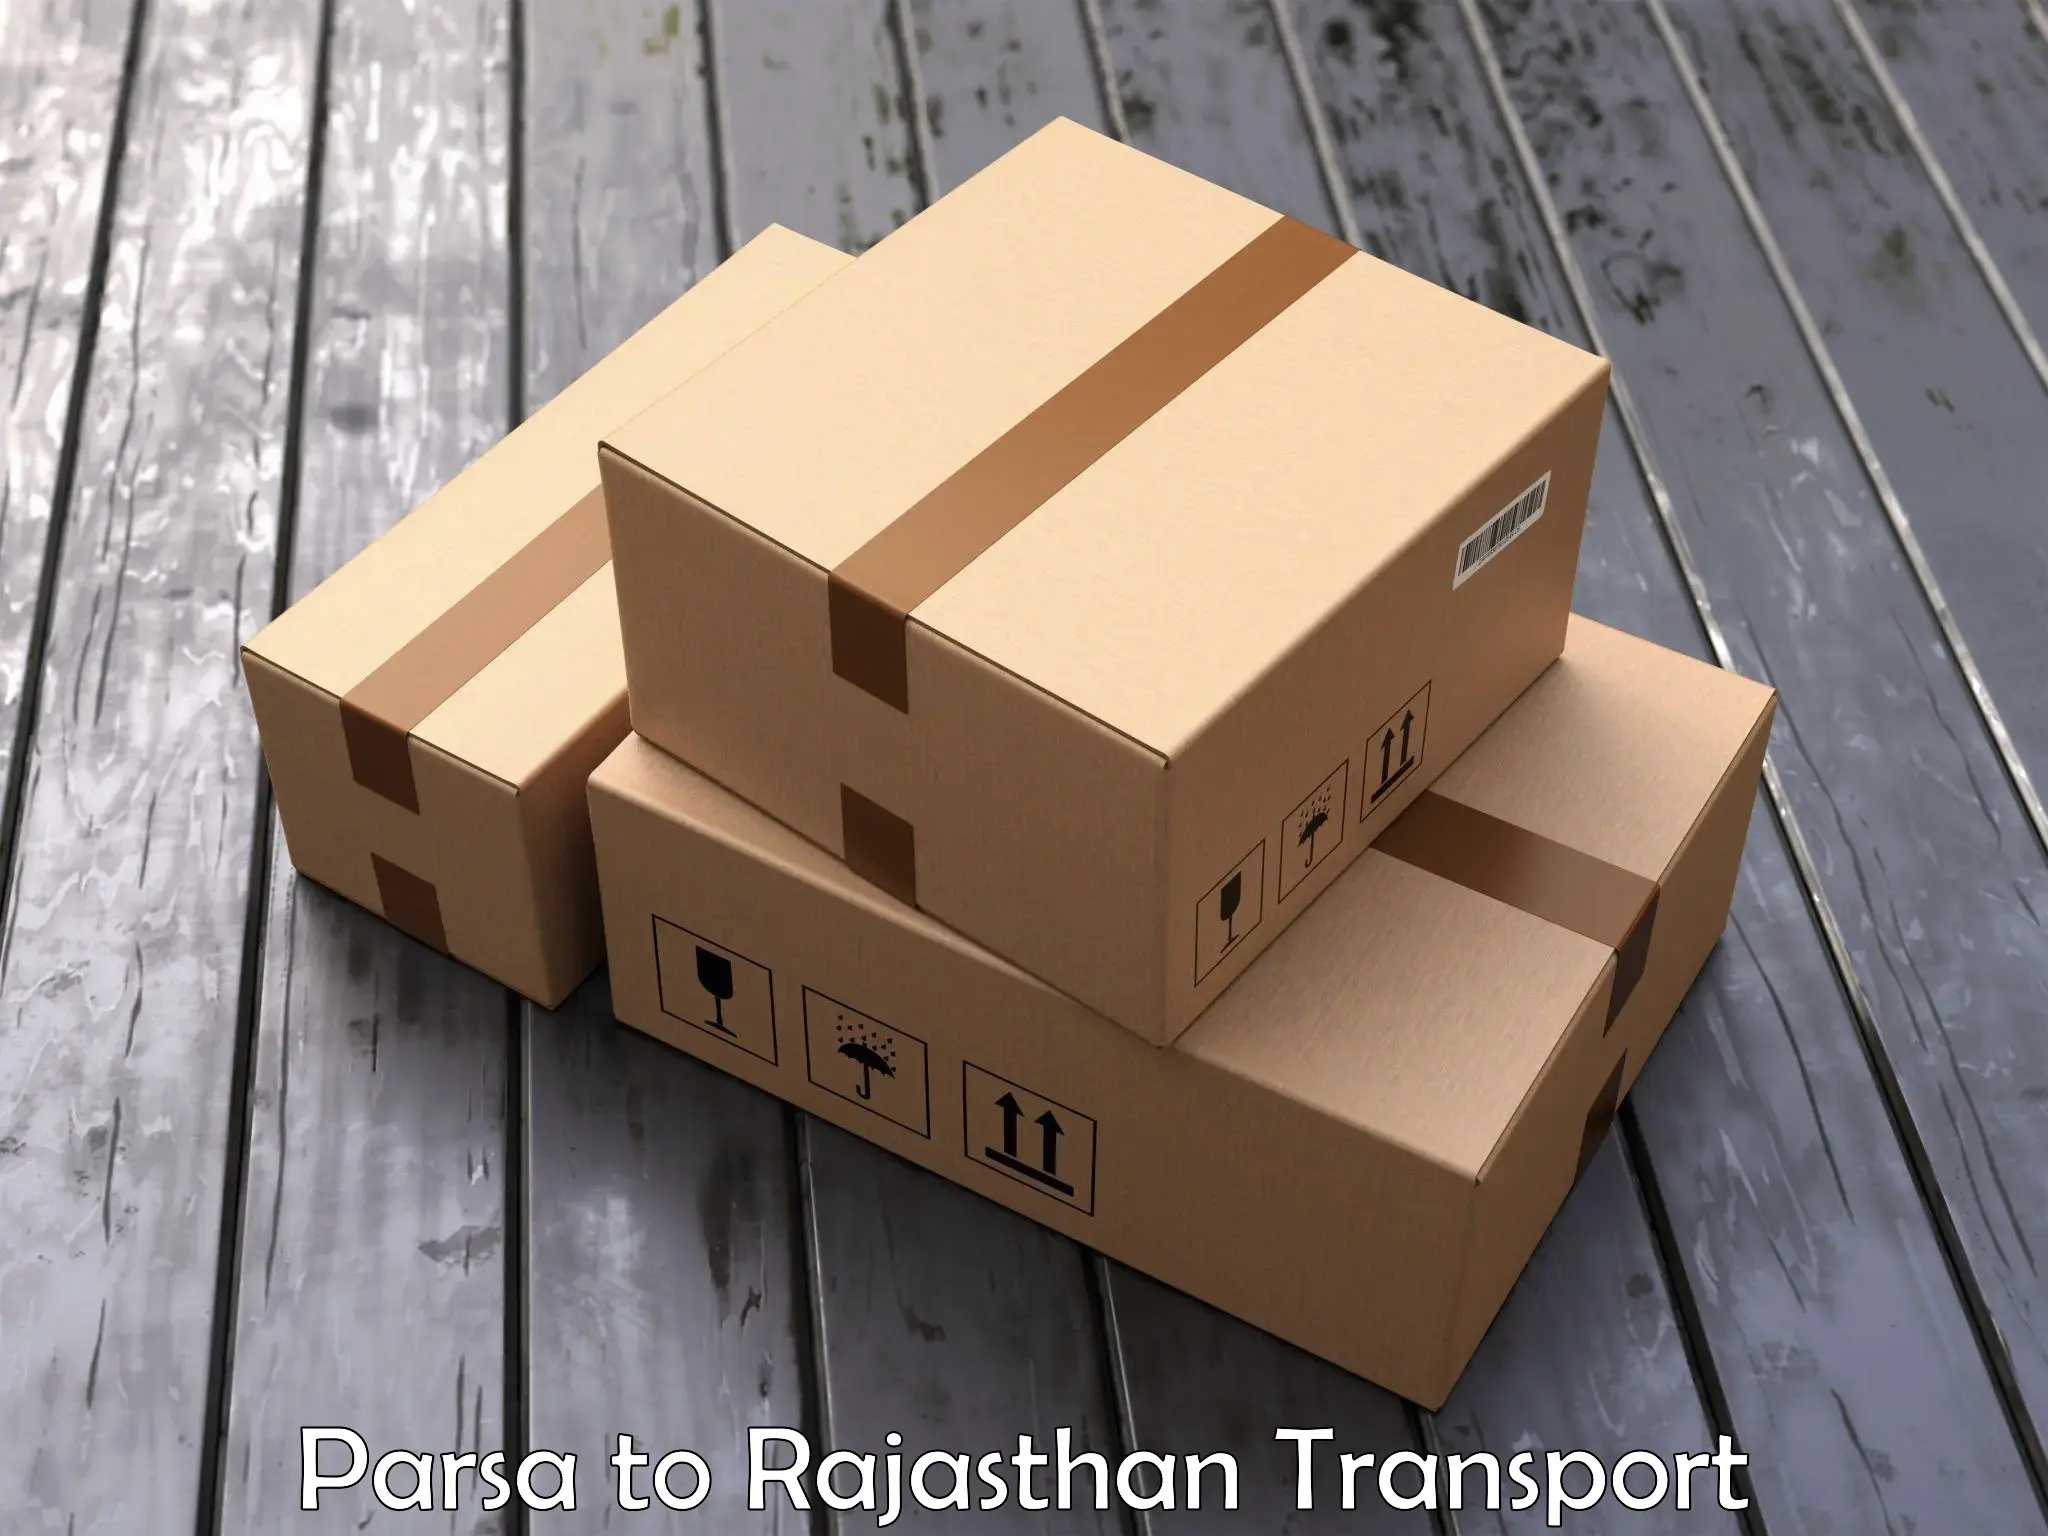 Vehicle parcel service Parsa to Chittorgarh